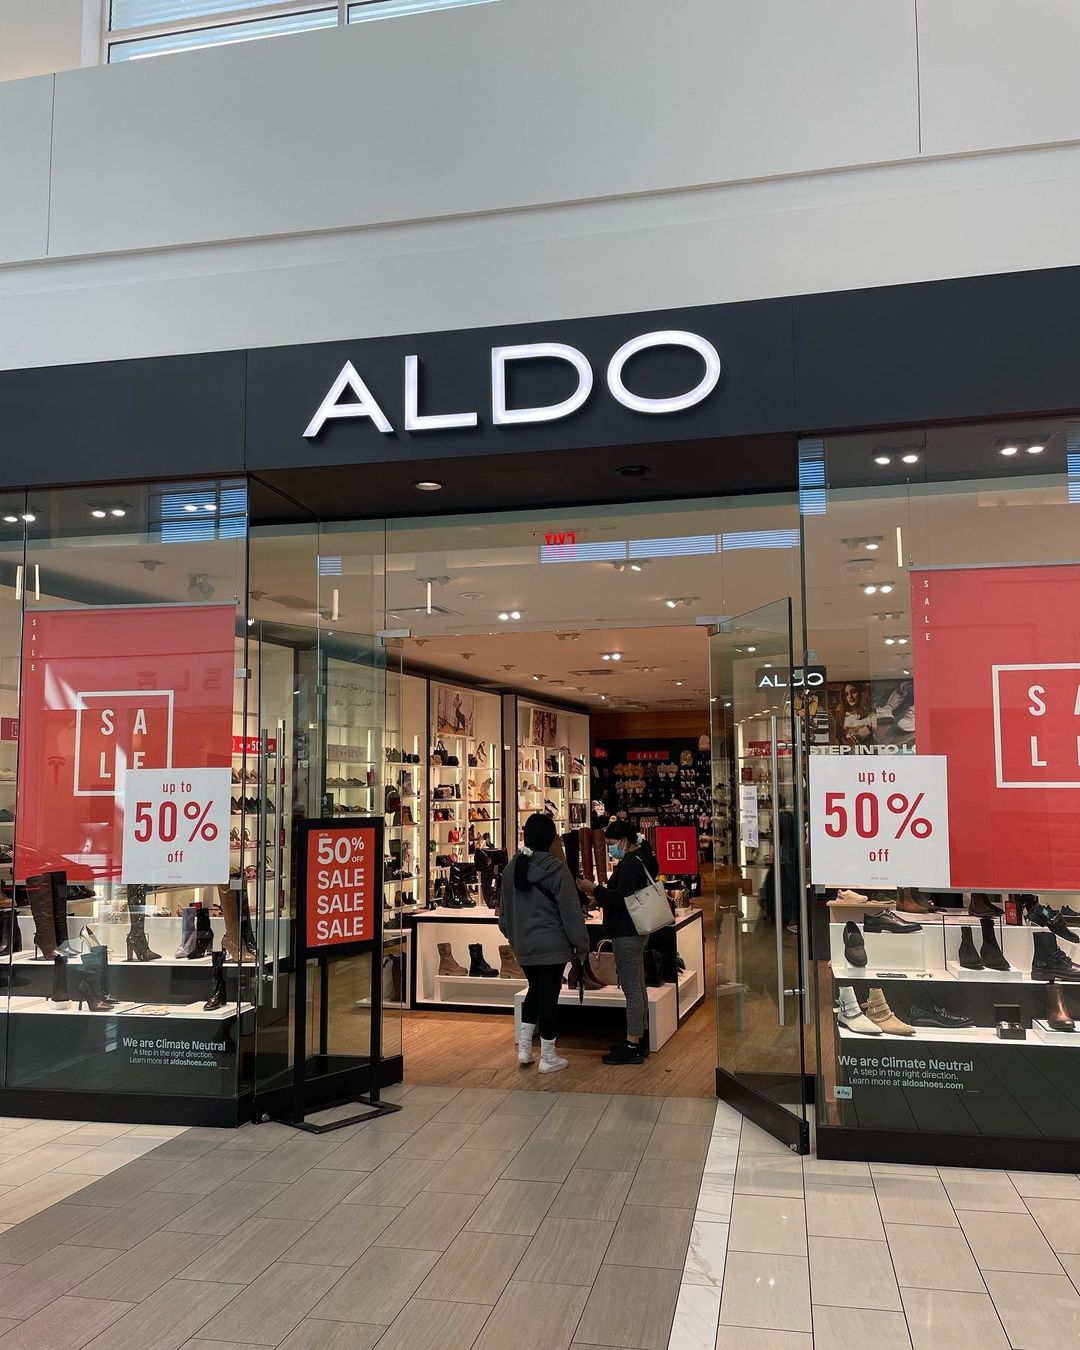 Aldo Florida Mall - Shopping in Orlando